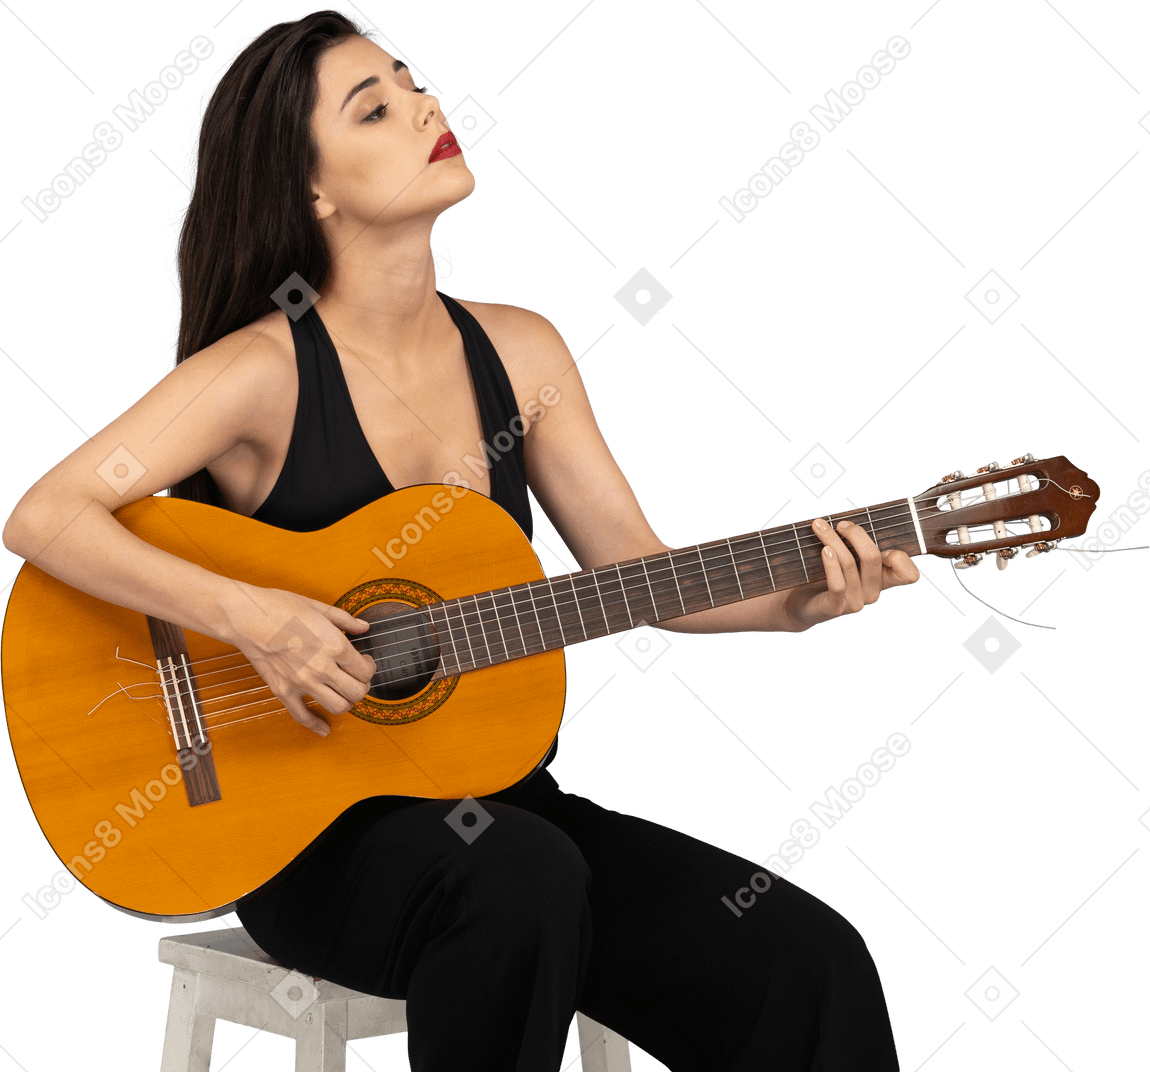 Vista de três quartos de uma jovem sentada de terno preto segurando o violão e erguendo a cabeça